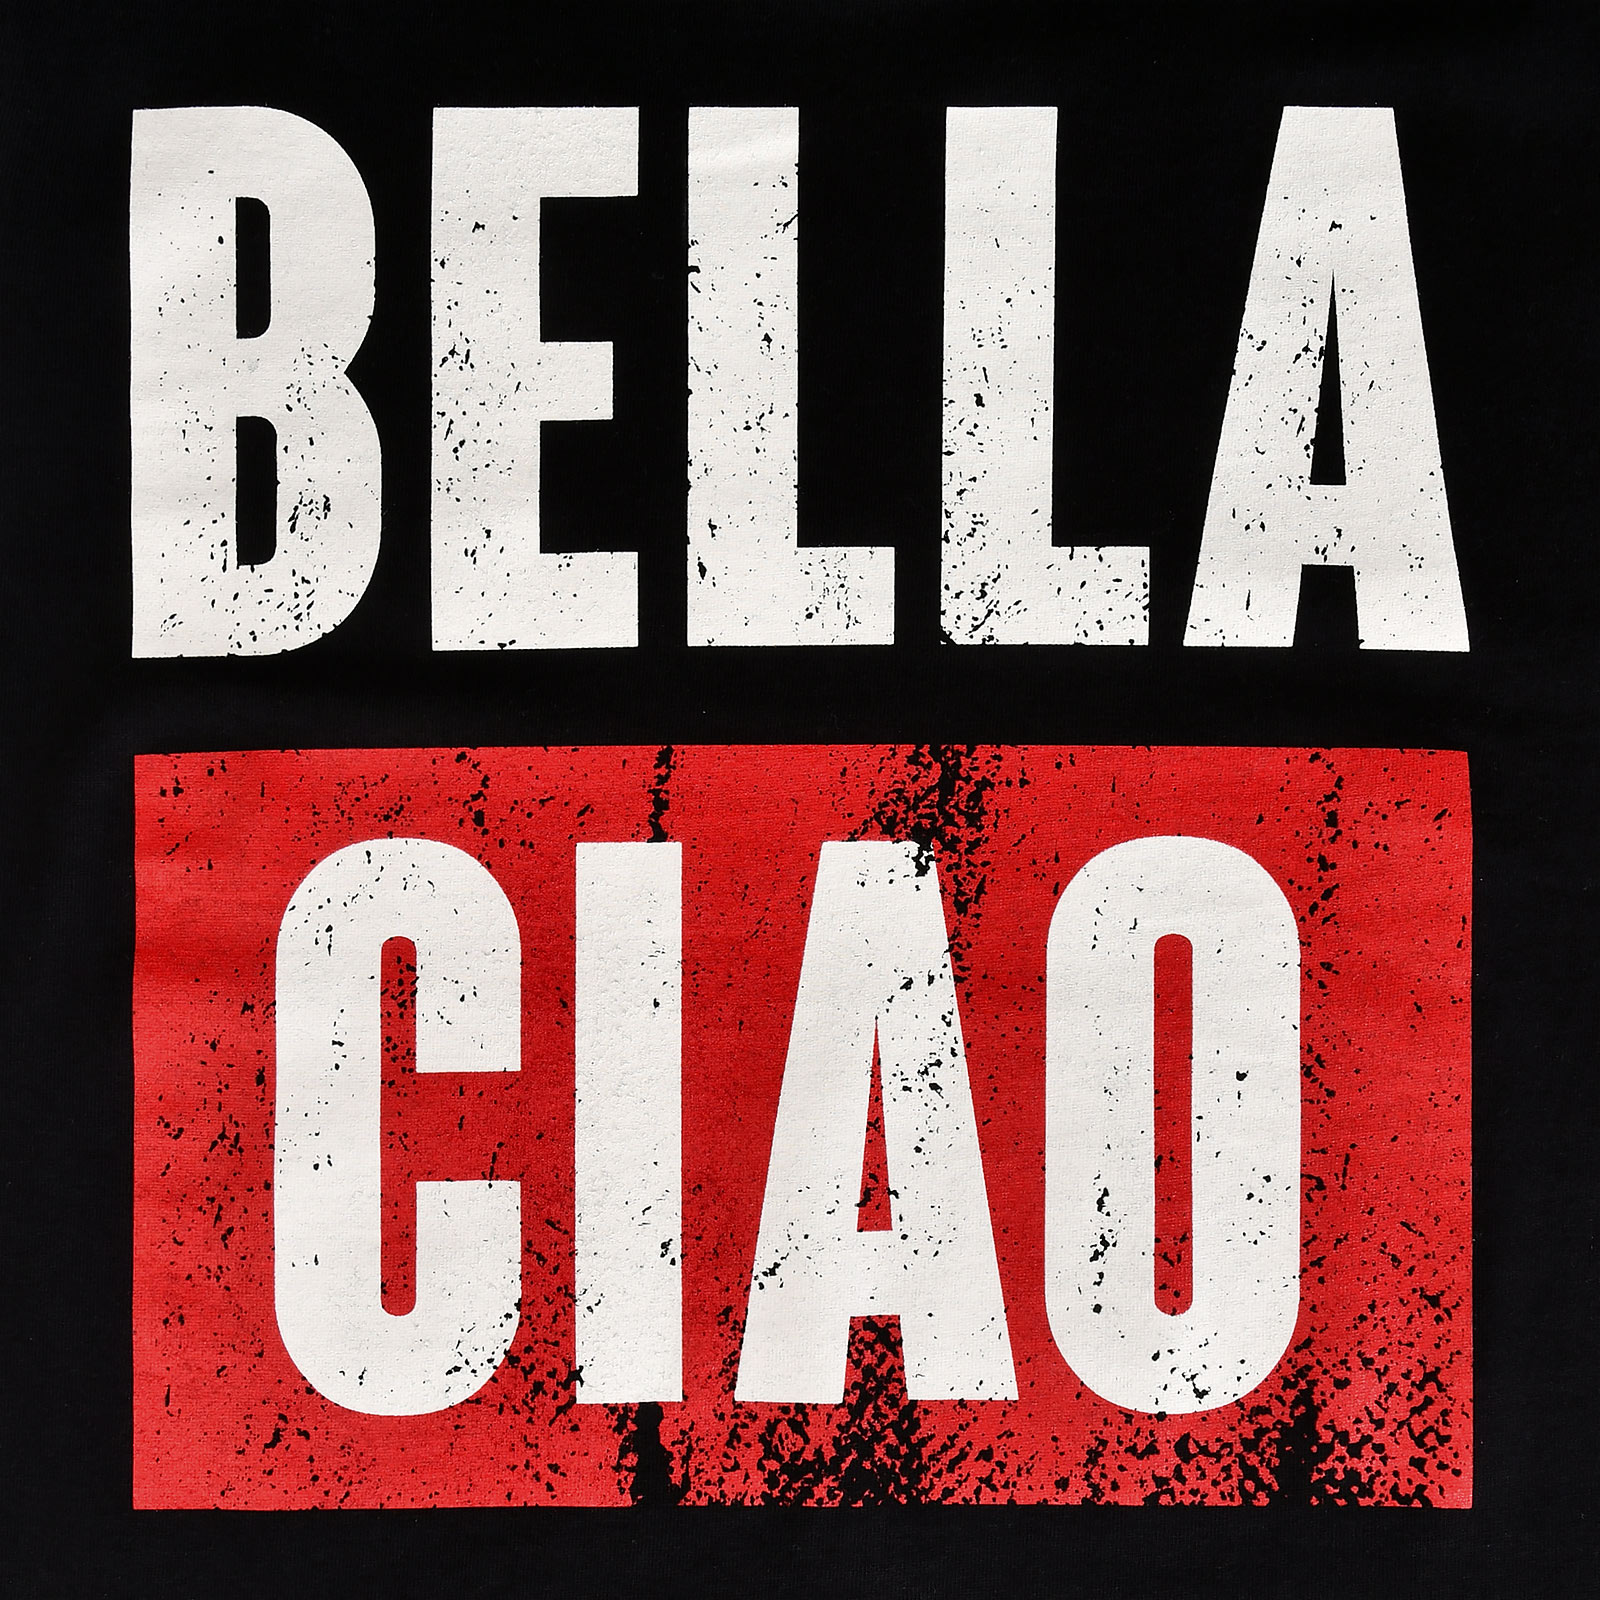 Bella Ciao T-Shirt für Haus des Geldes Fans schwarz